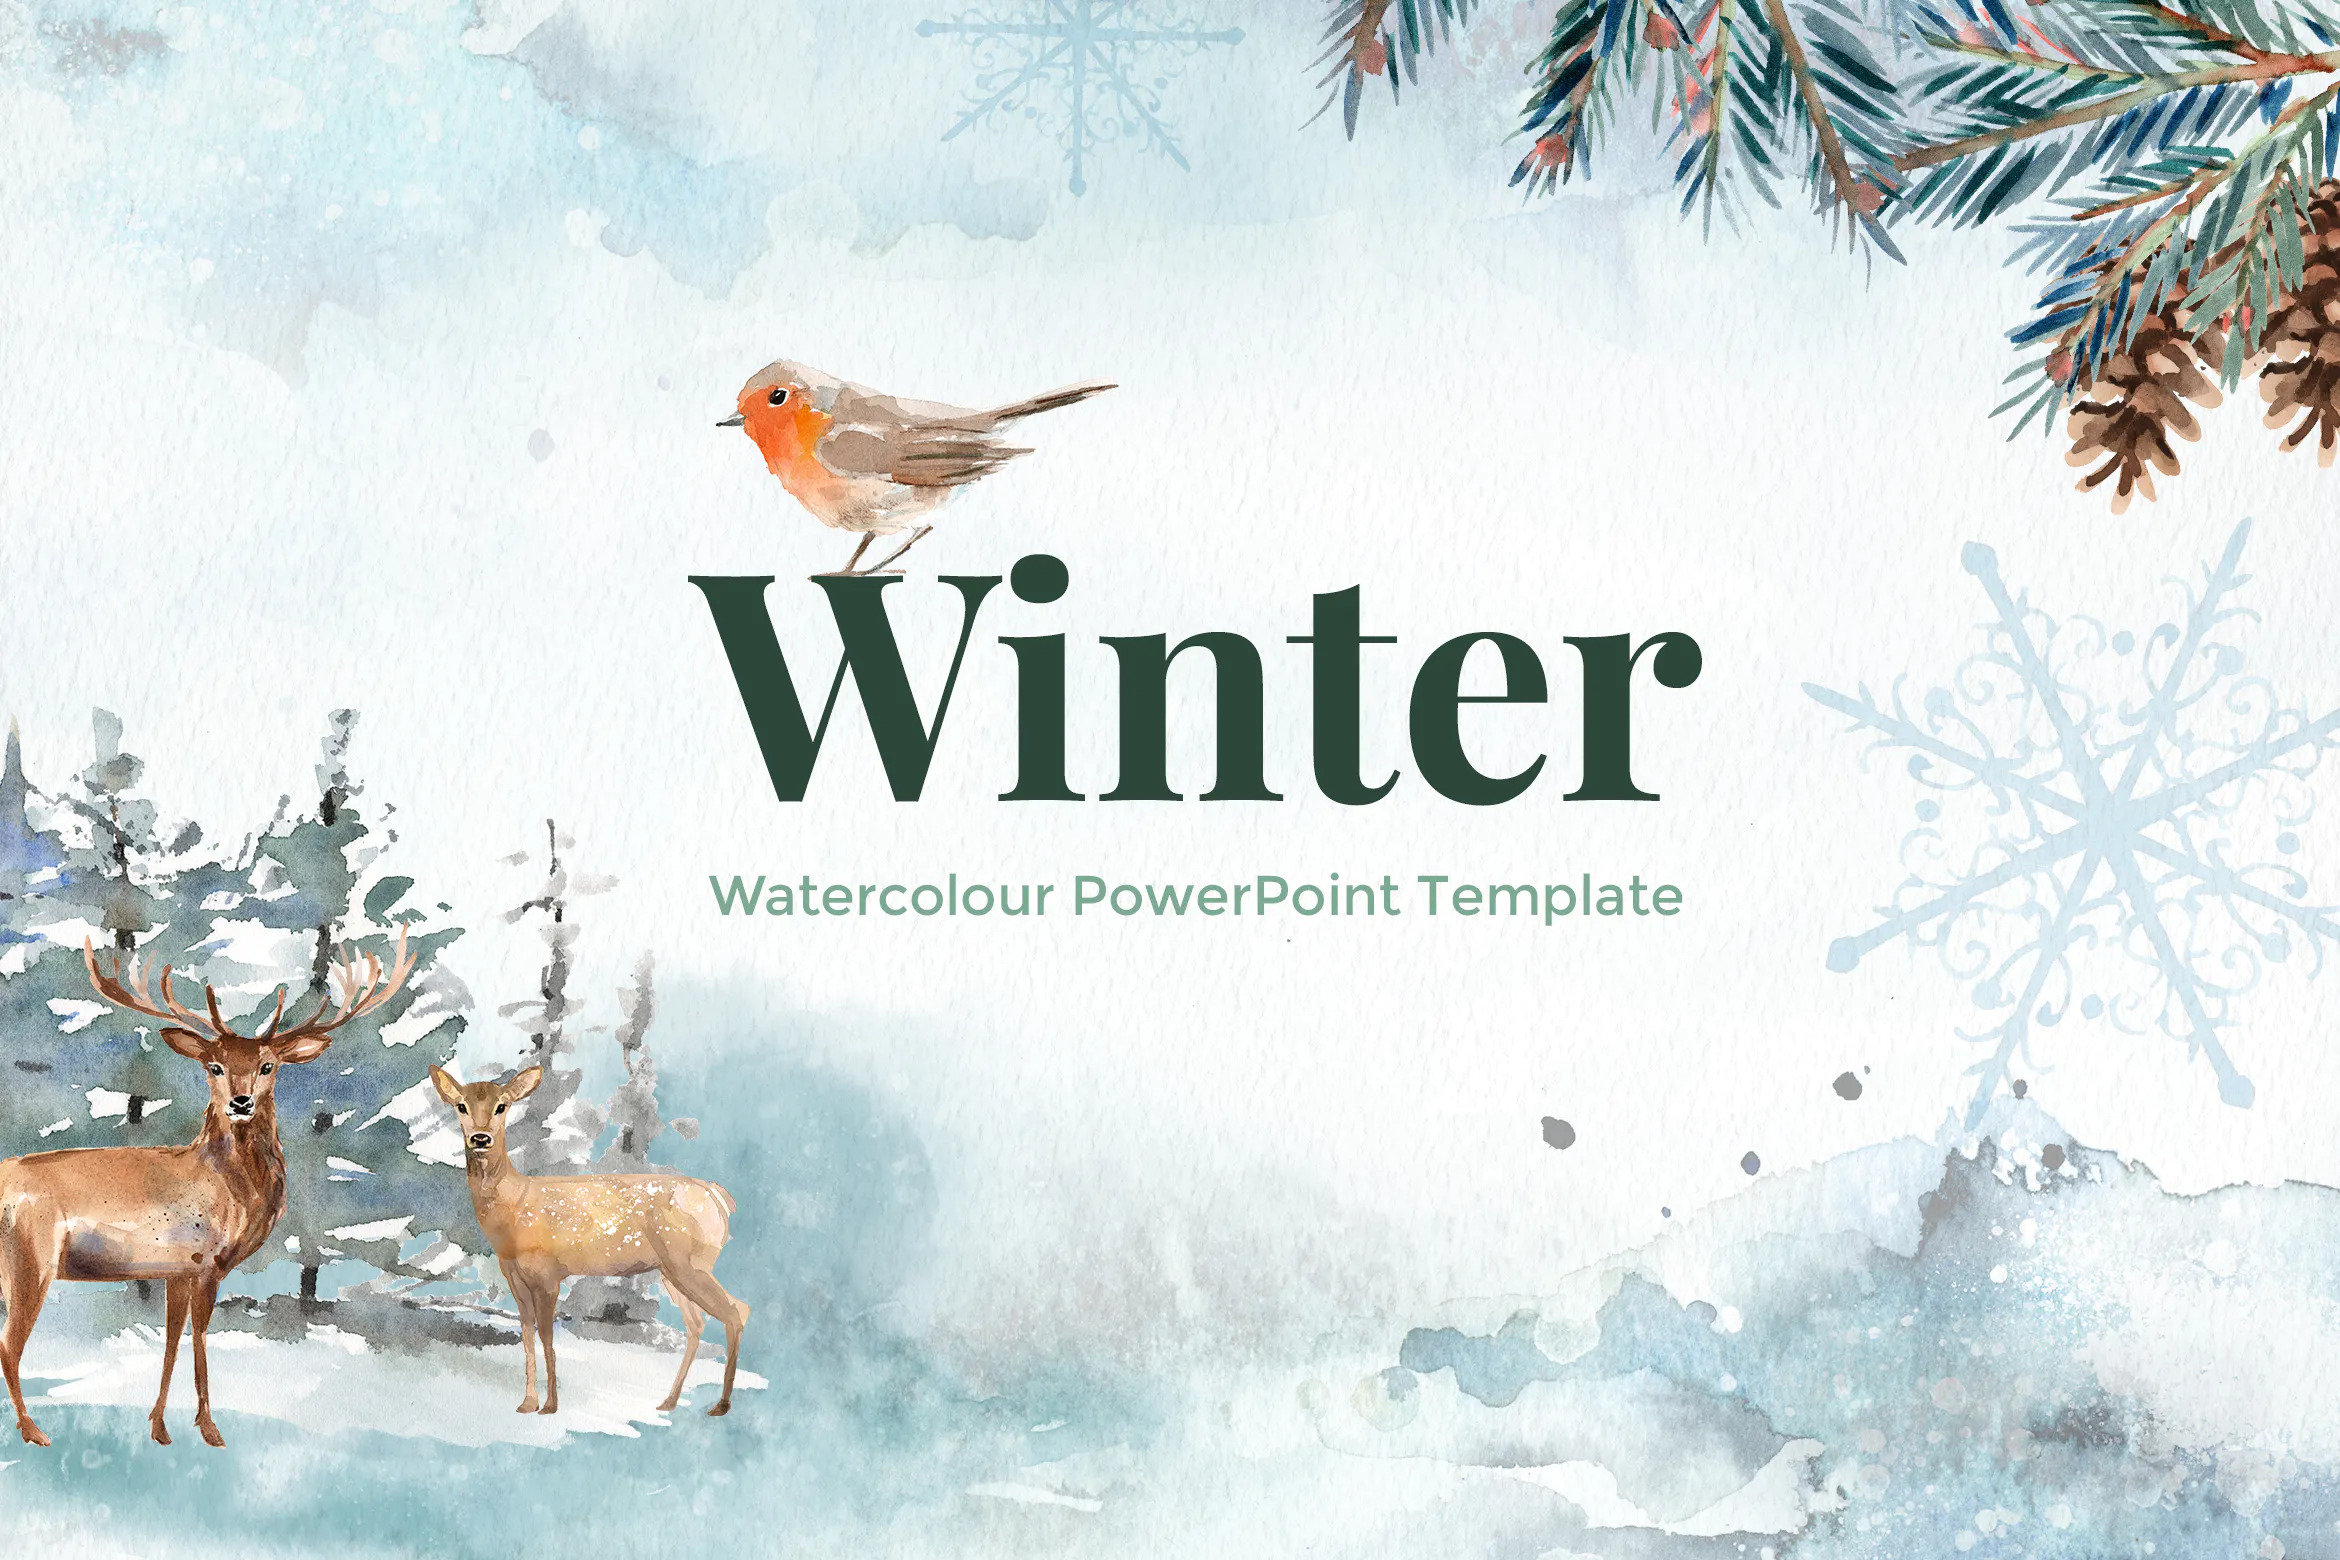 powerpoint presentation on winter season